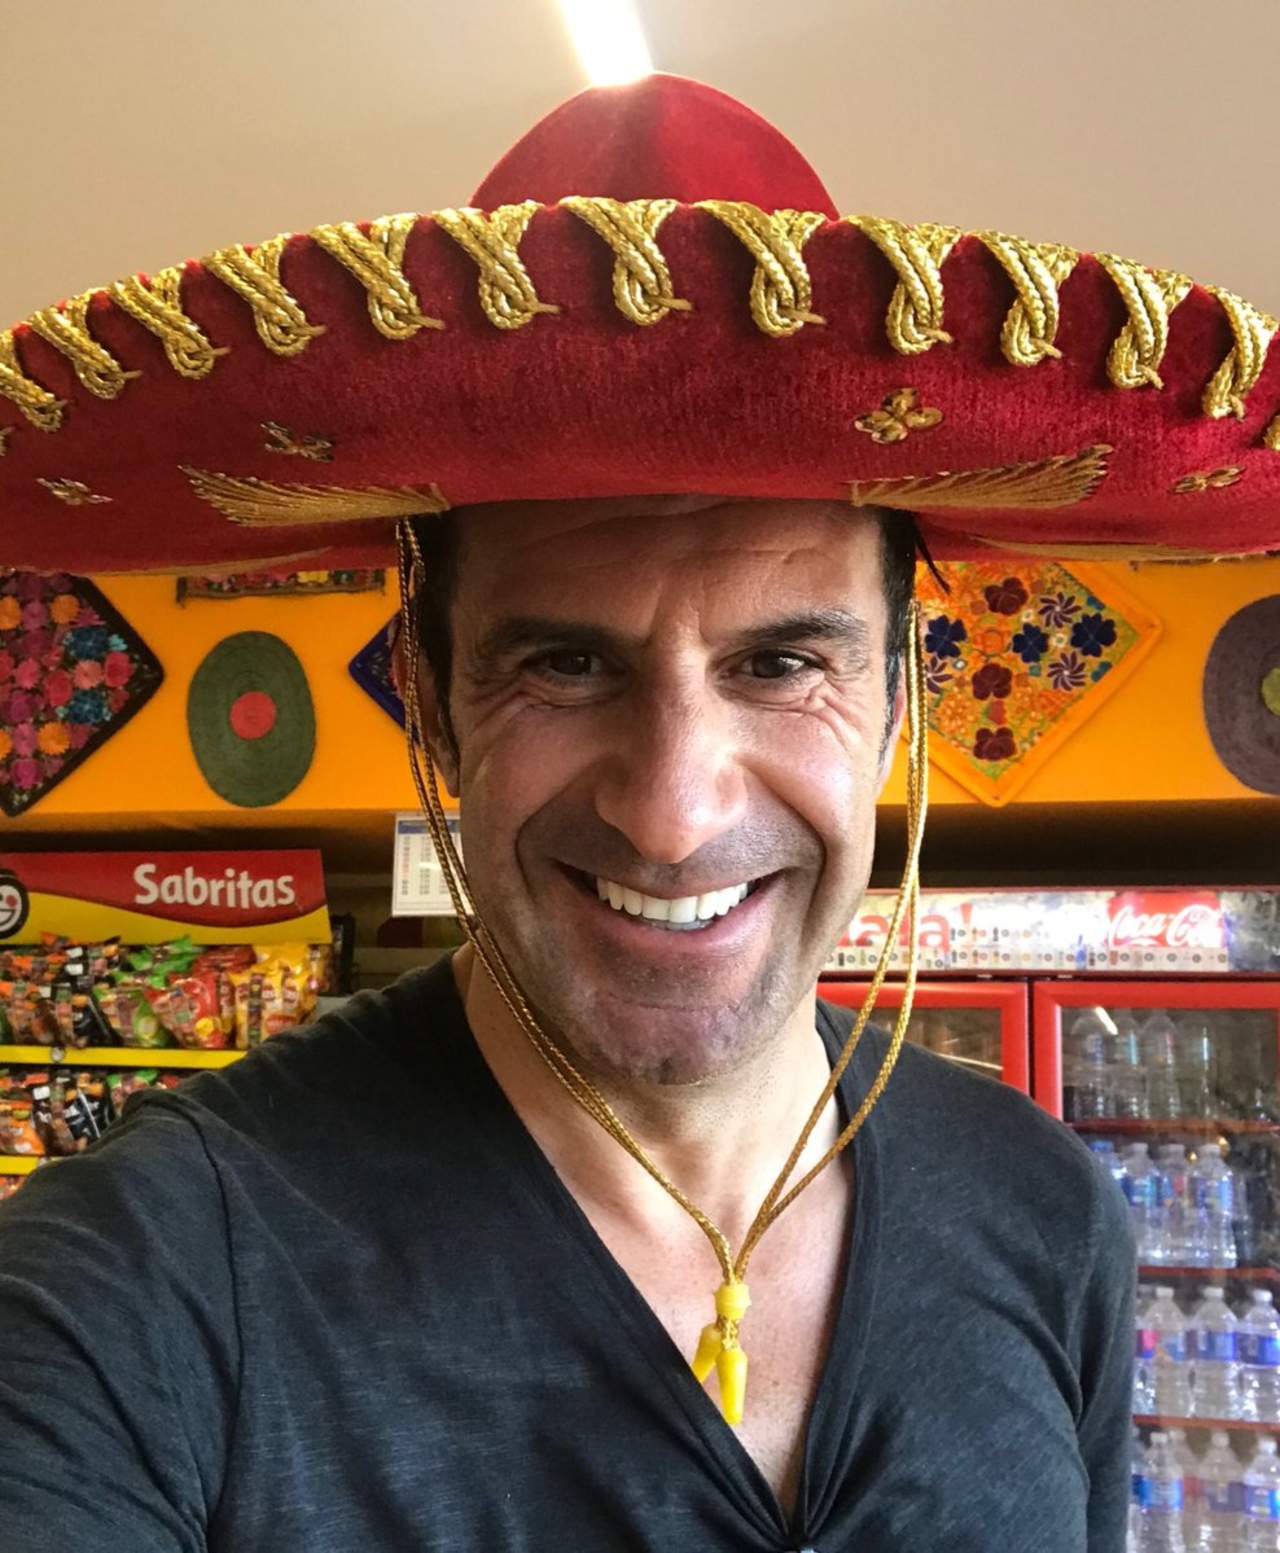 El jugador portugués subió a Instagram y Twitter una foto en la que aparece con un sombrero de mariachi y un mensaje que dice: 'México querido'. (TWITTER)